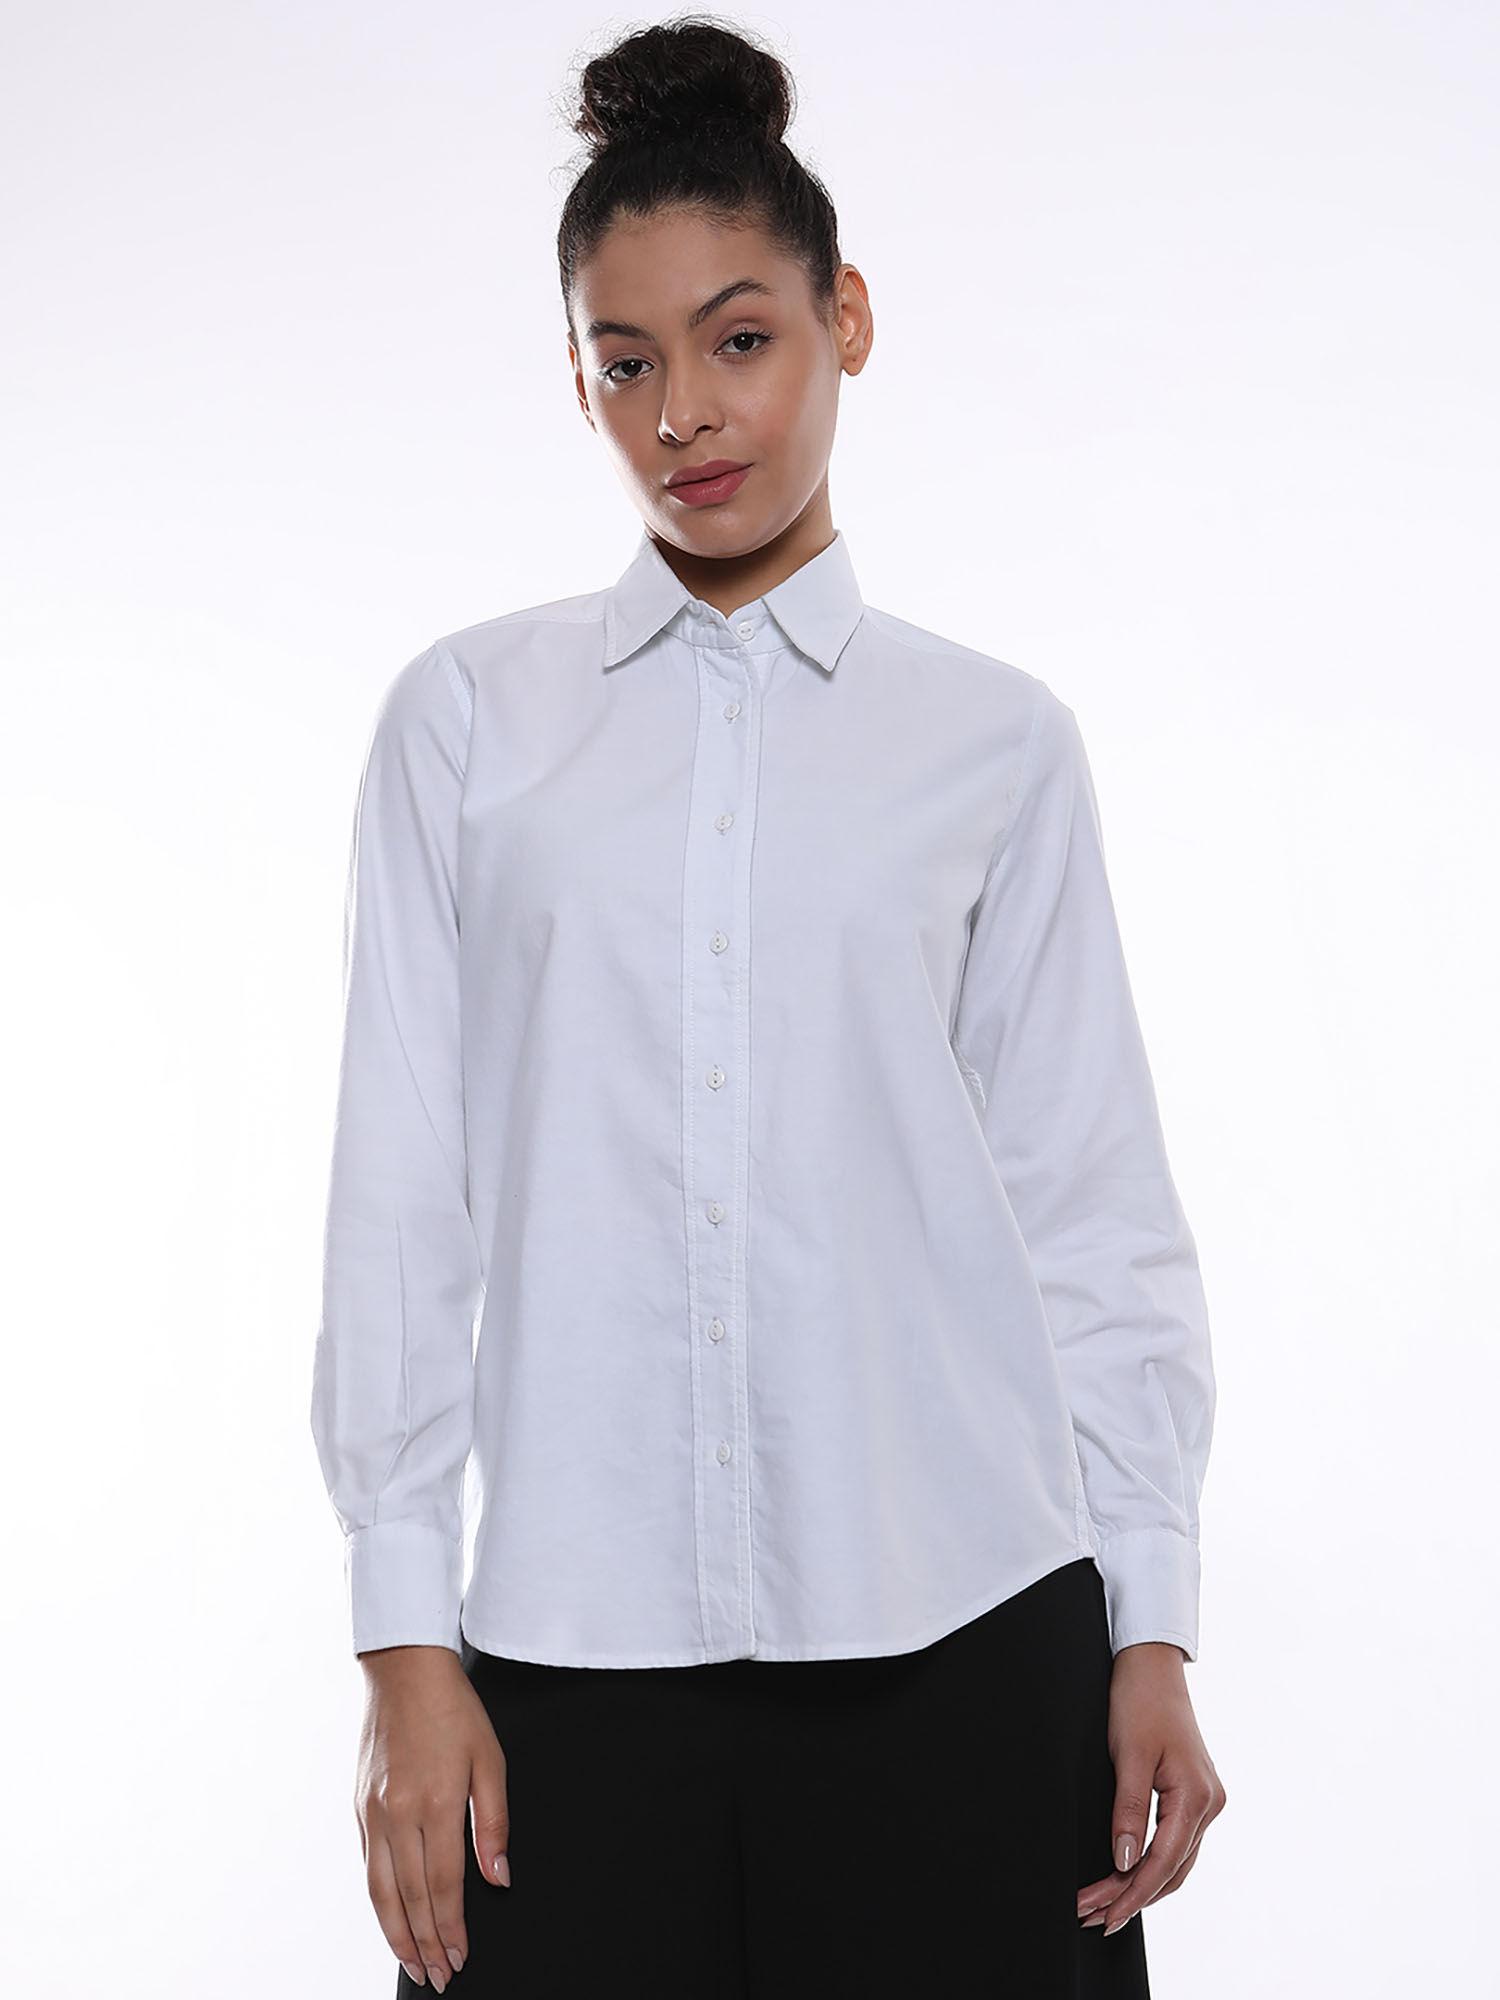 women aria white oxford cotton formal shirt